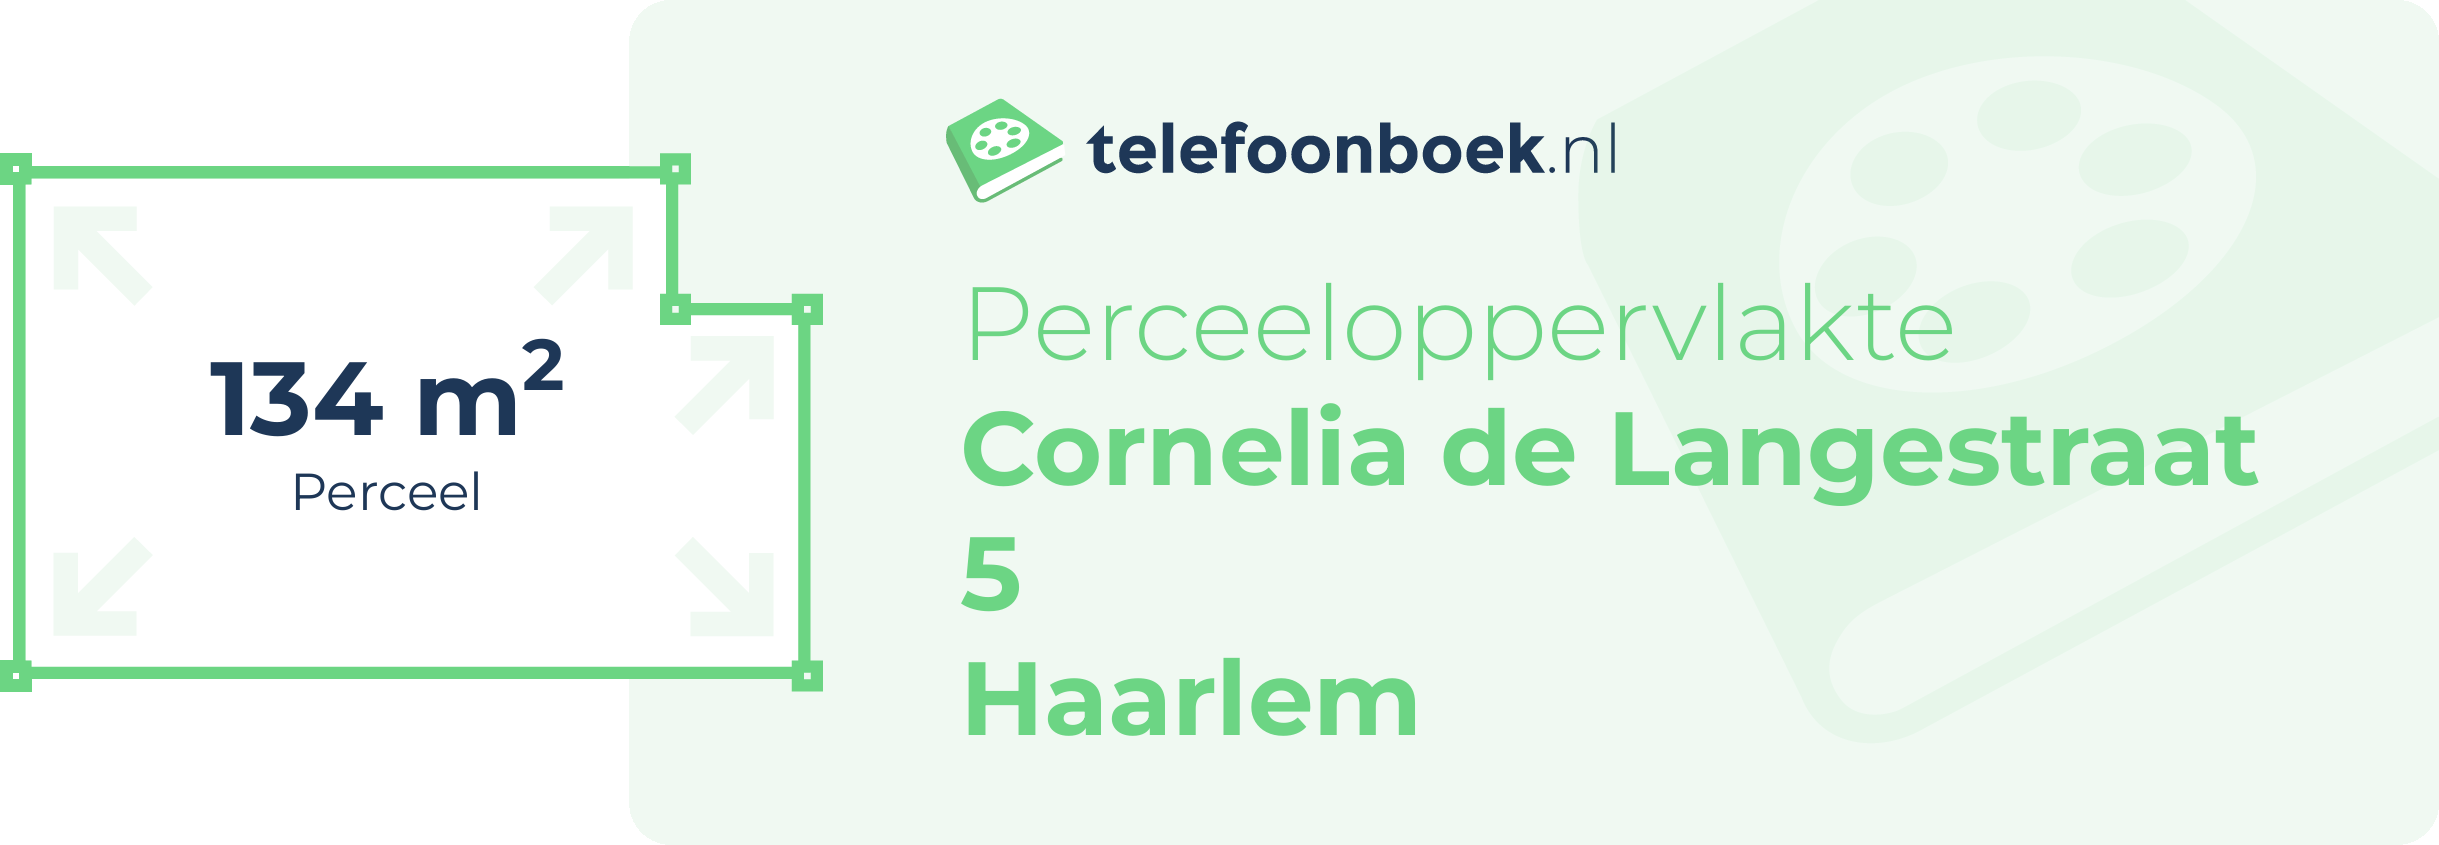 Perceeloppervlakte Cornelia De Langestraat 5 Haarlem